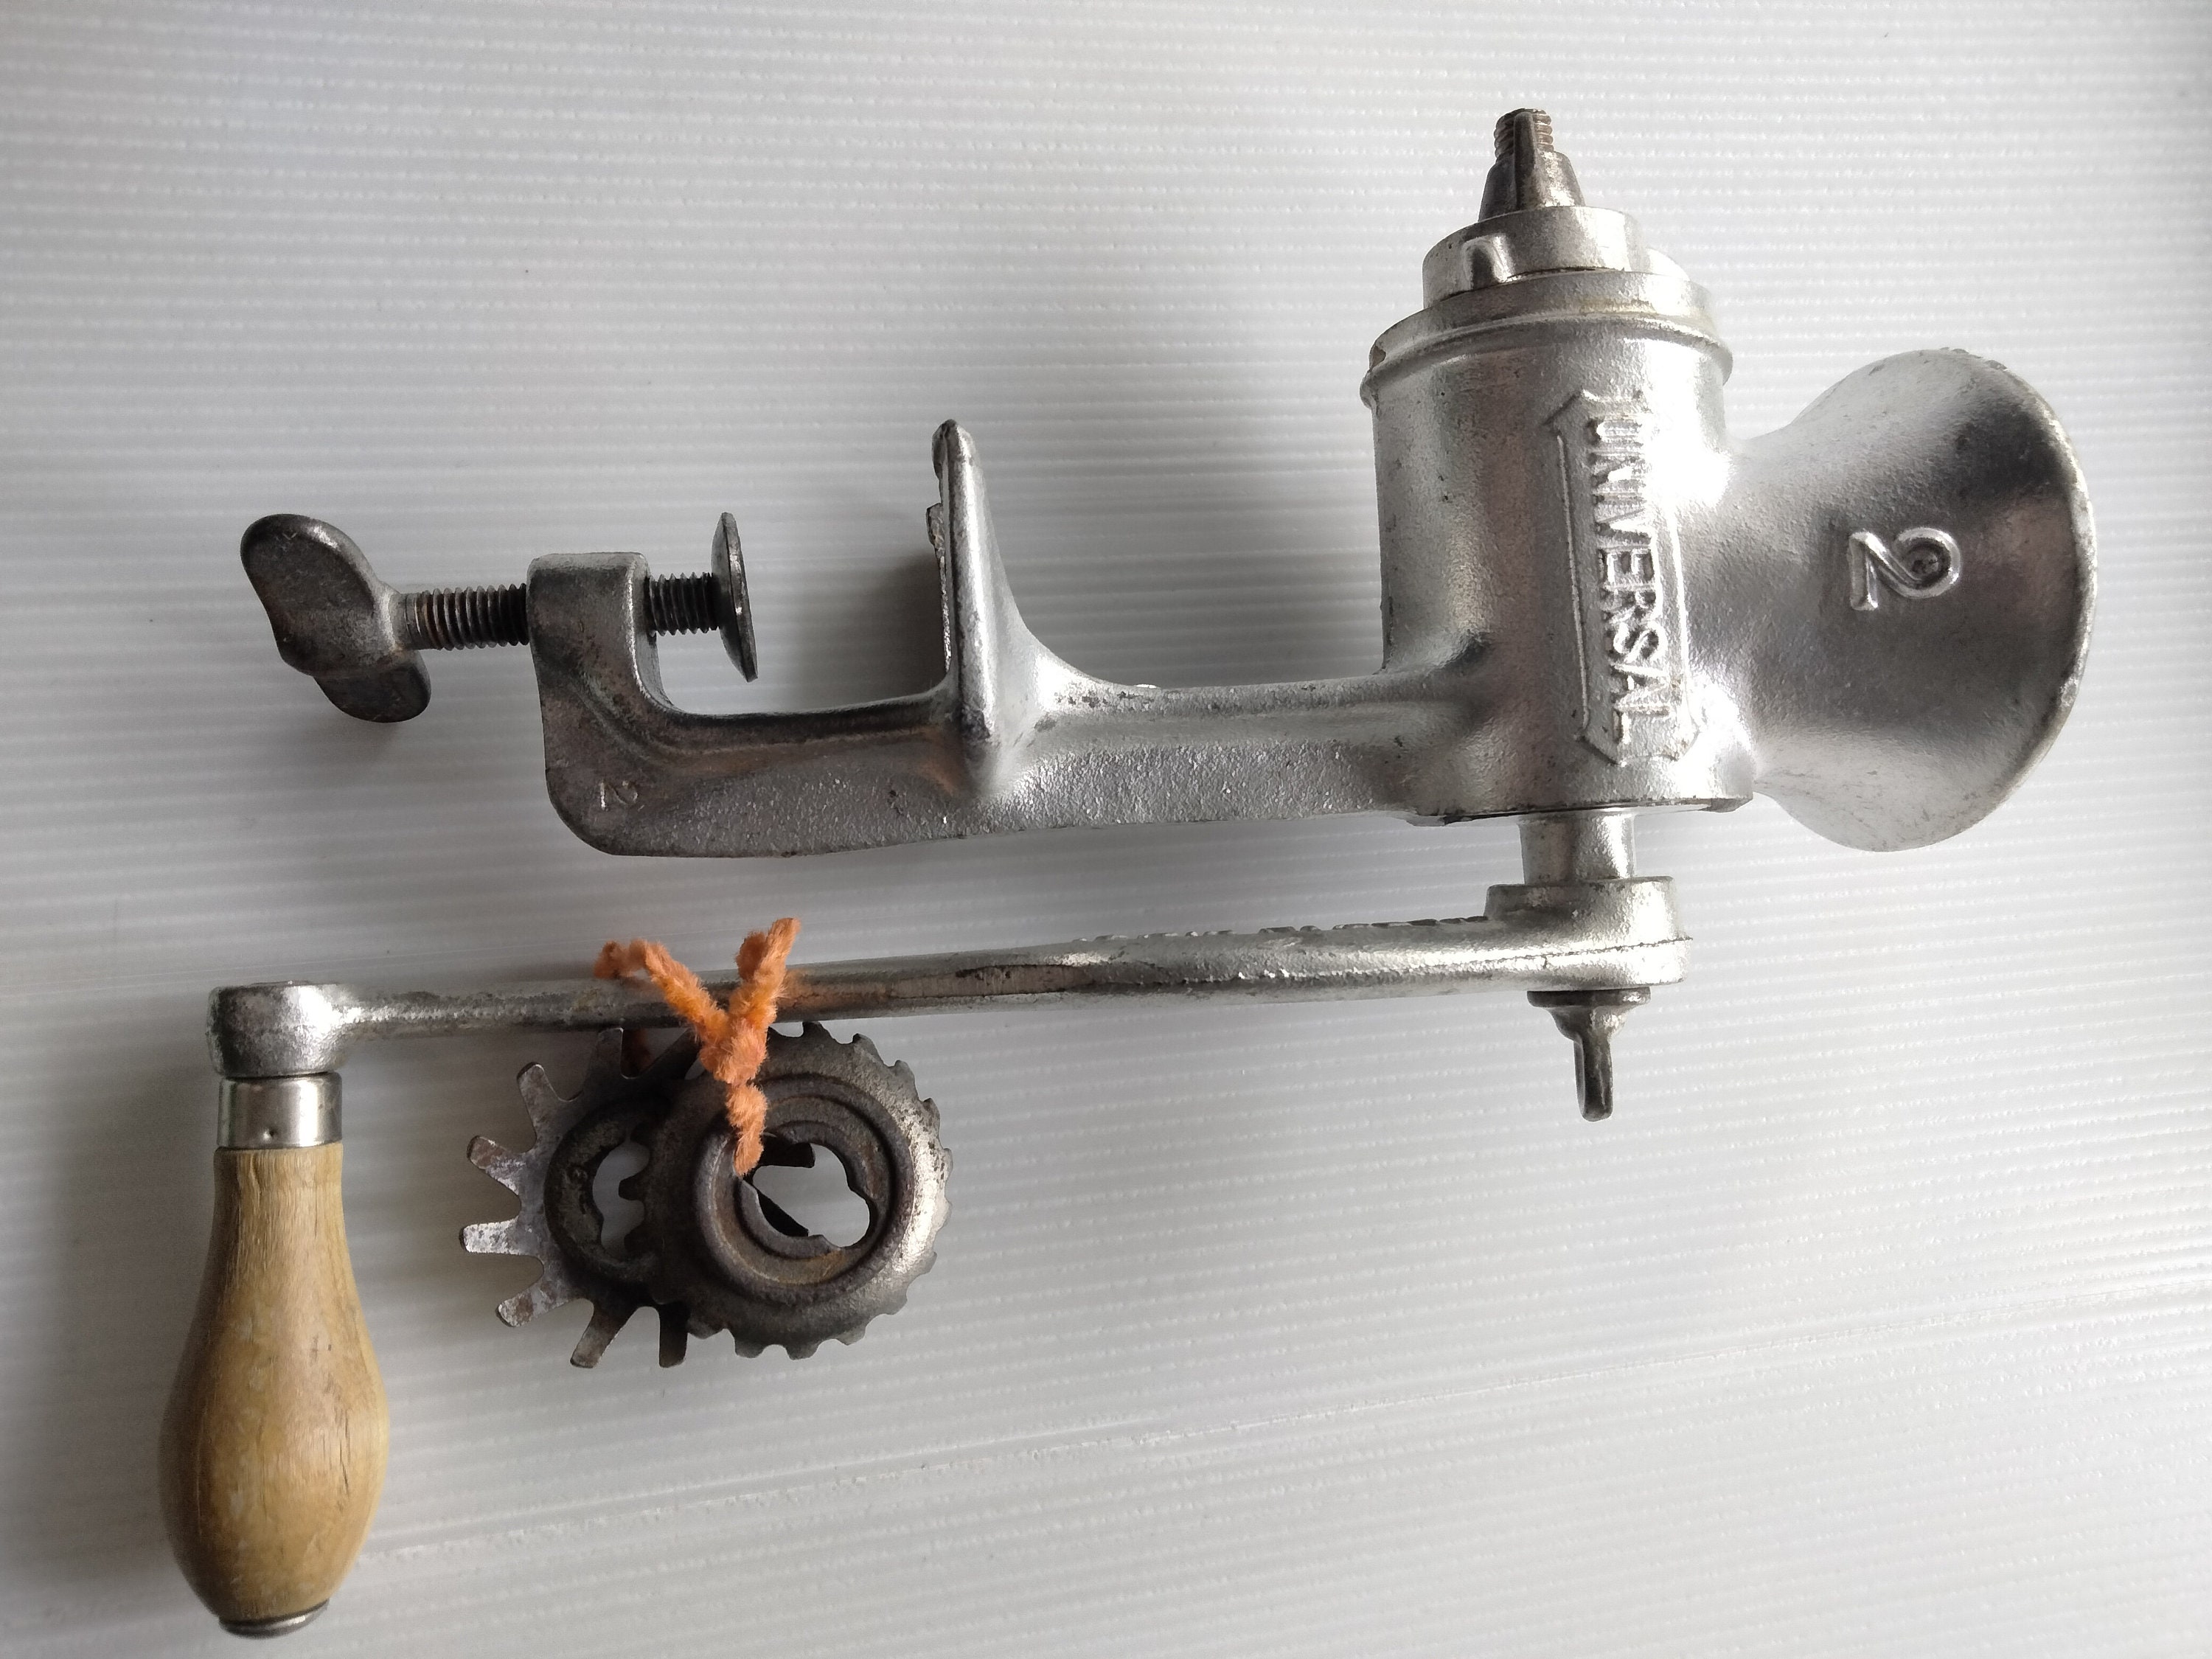 vintage Universal No. 1551 hand crank food chopper meat grinder